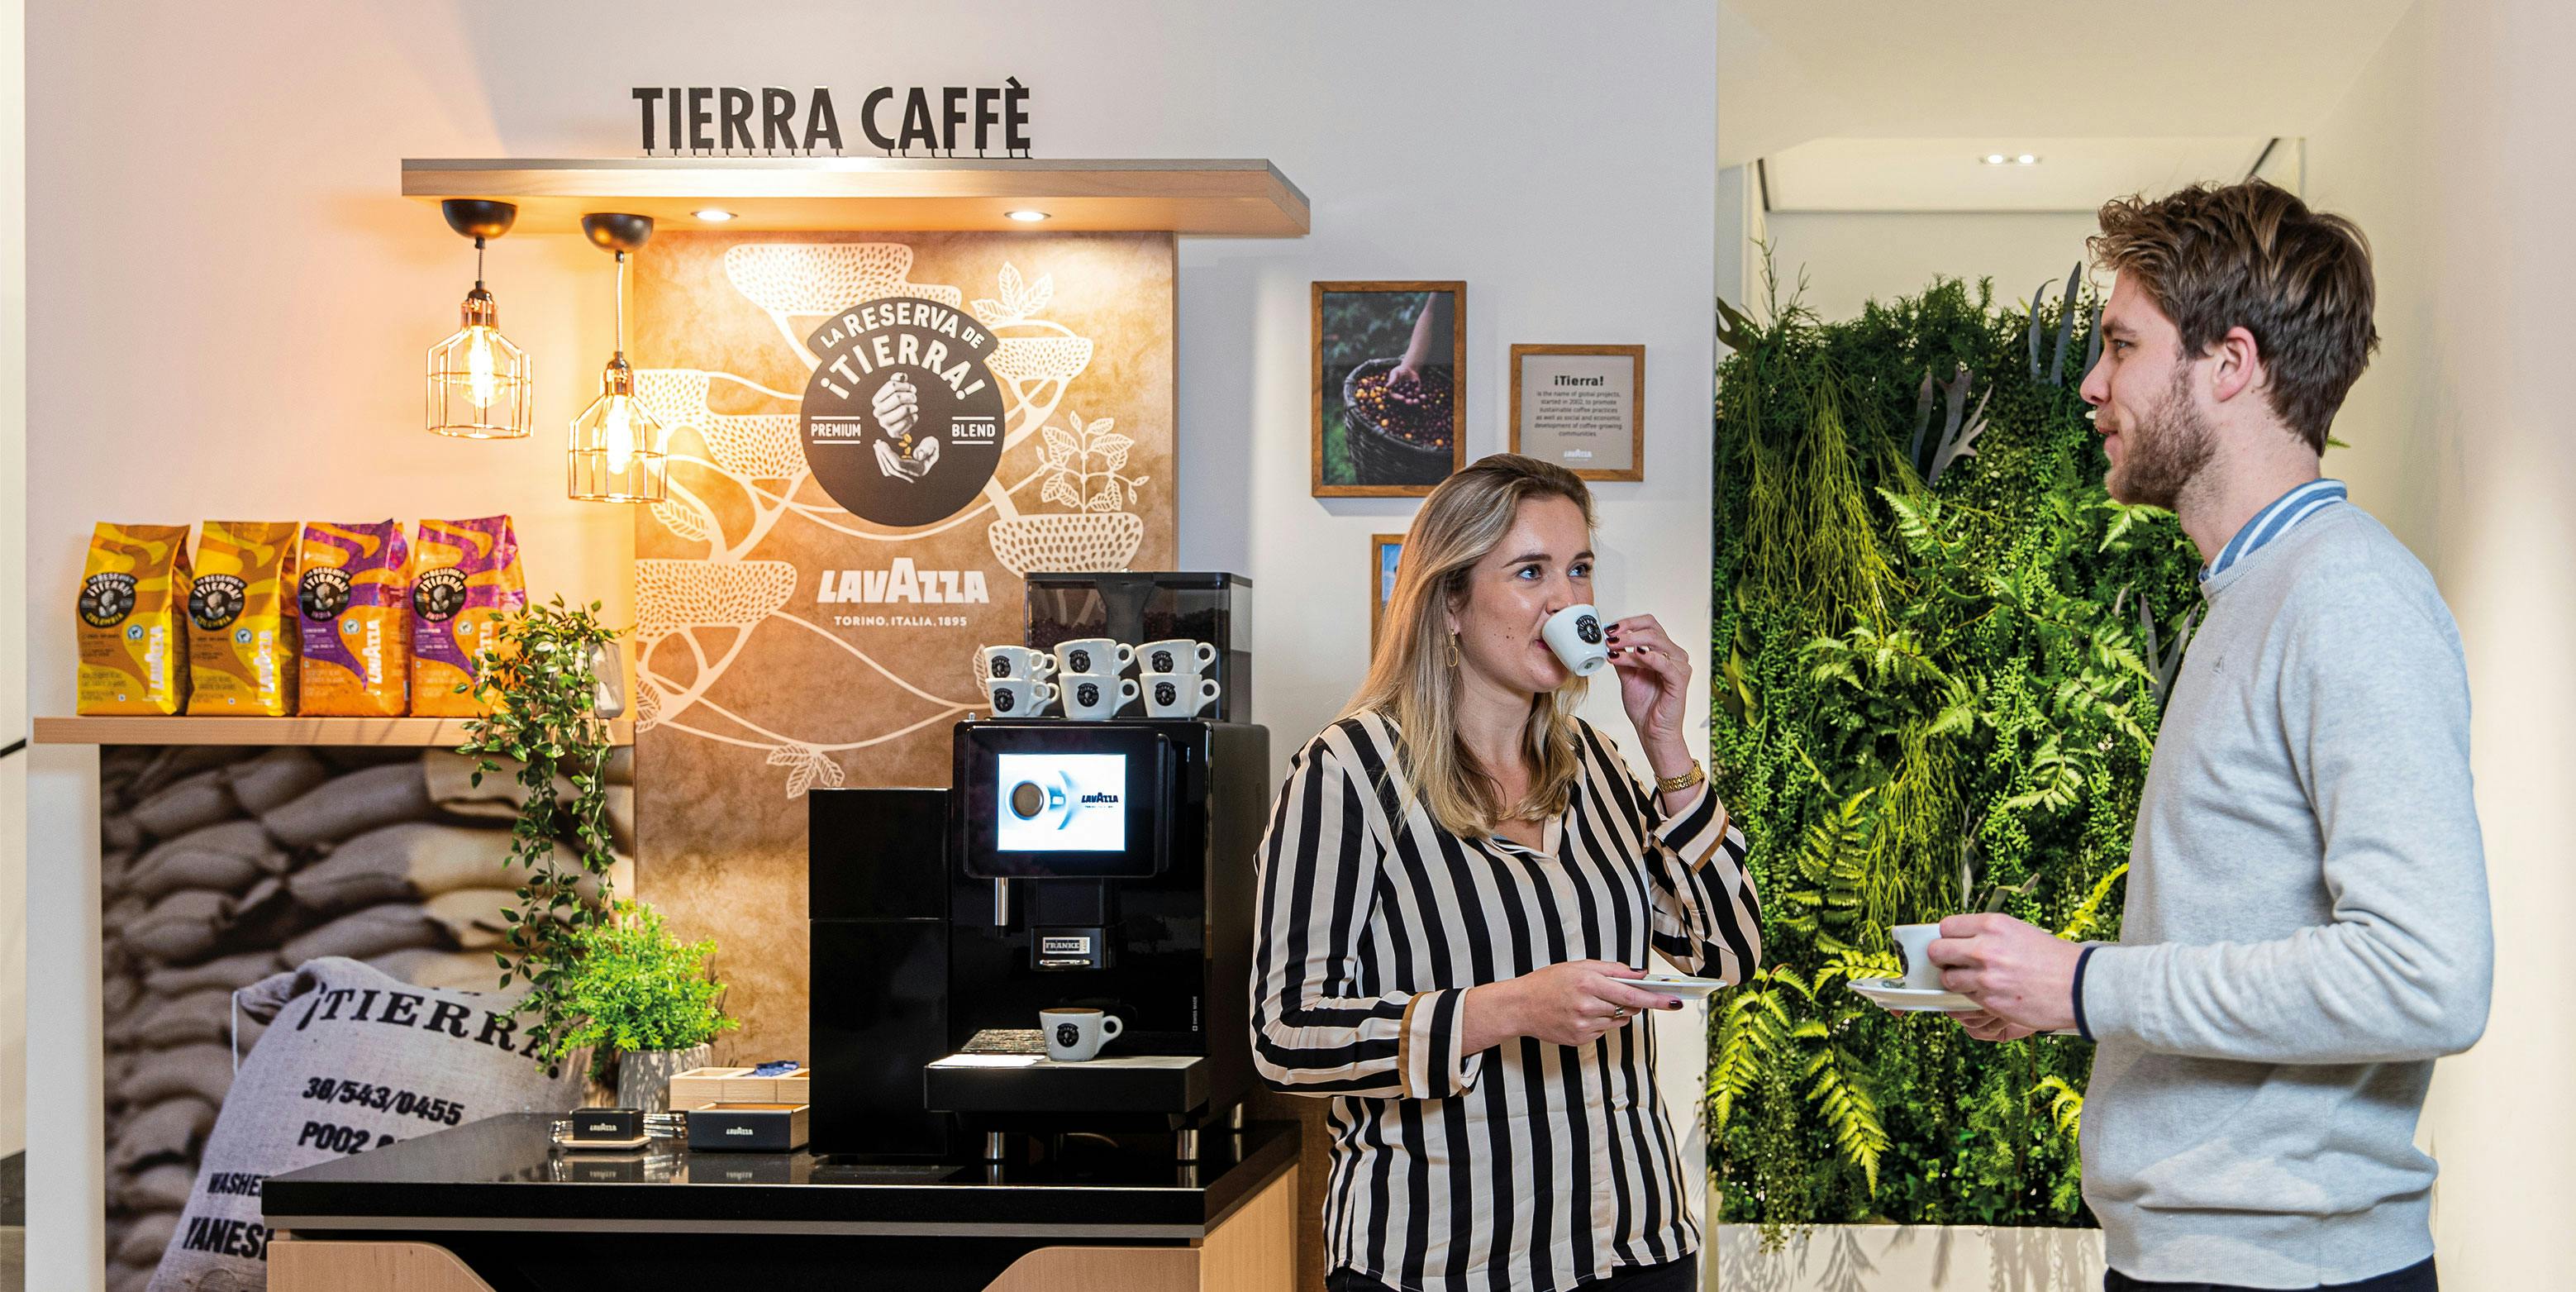 Café en grain Lavazza Caffè Espresso 1000g 1000 Gram bij Bonnet Office  Supplies